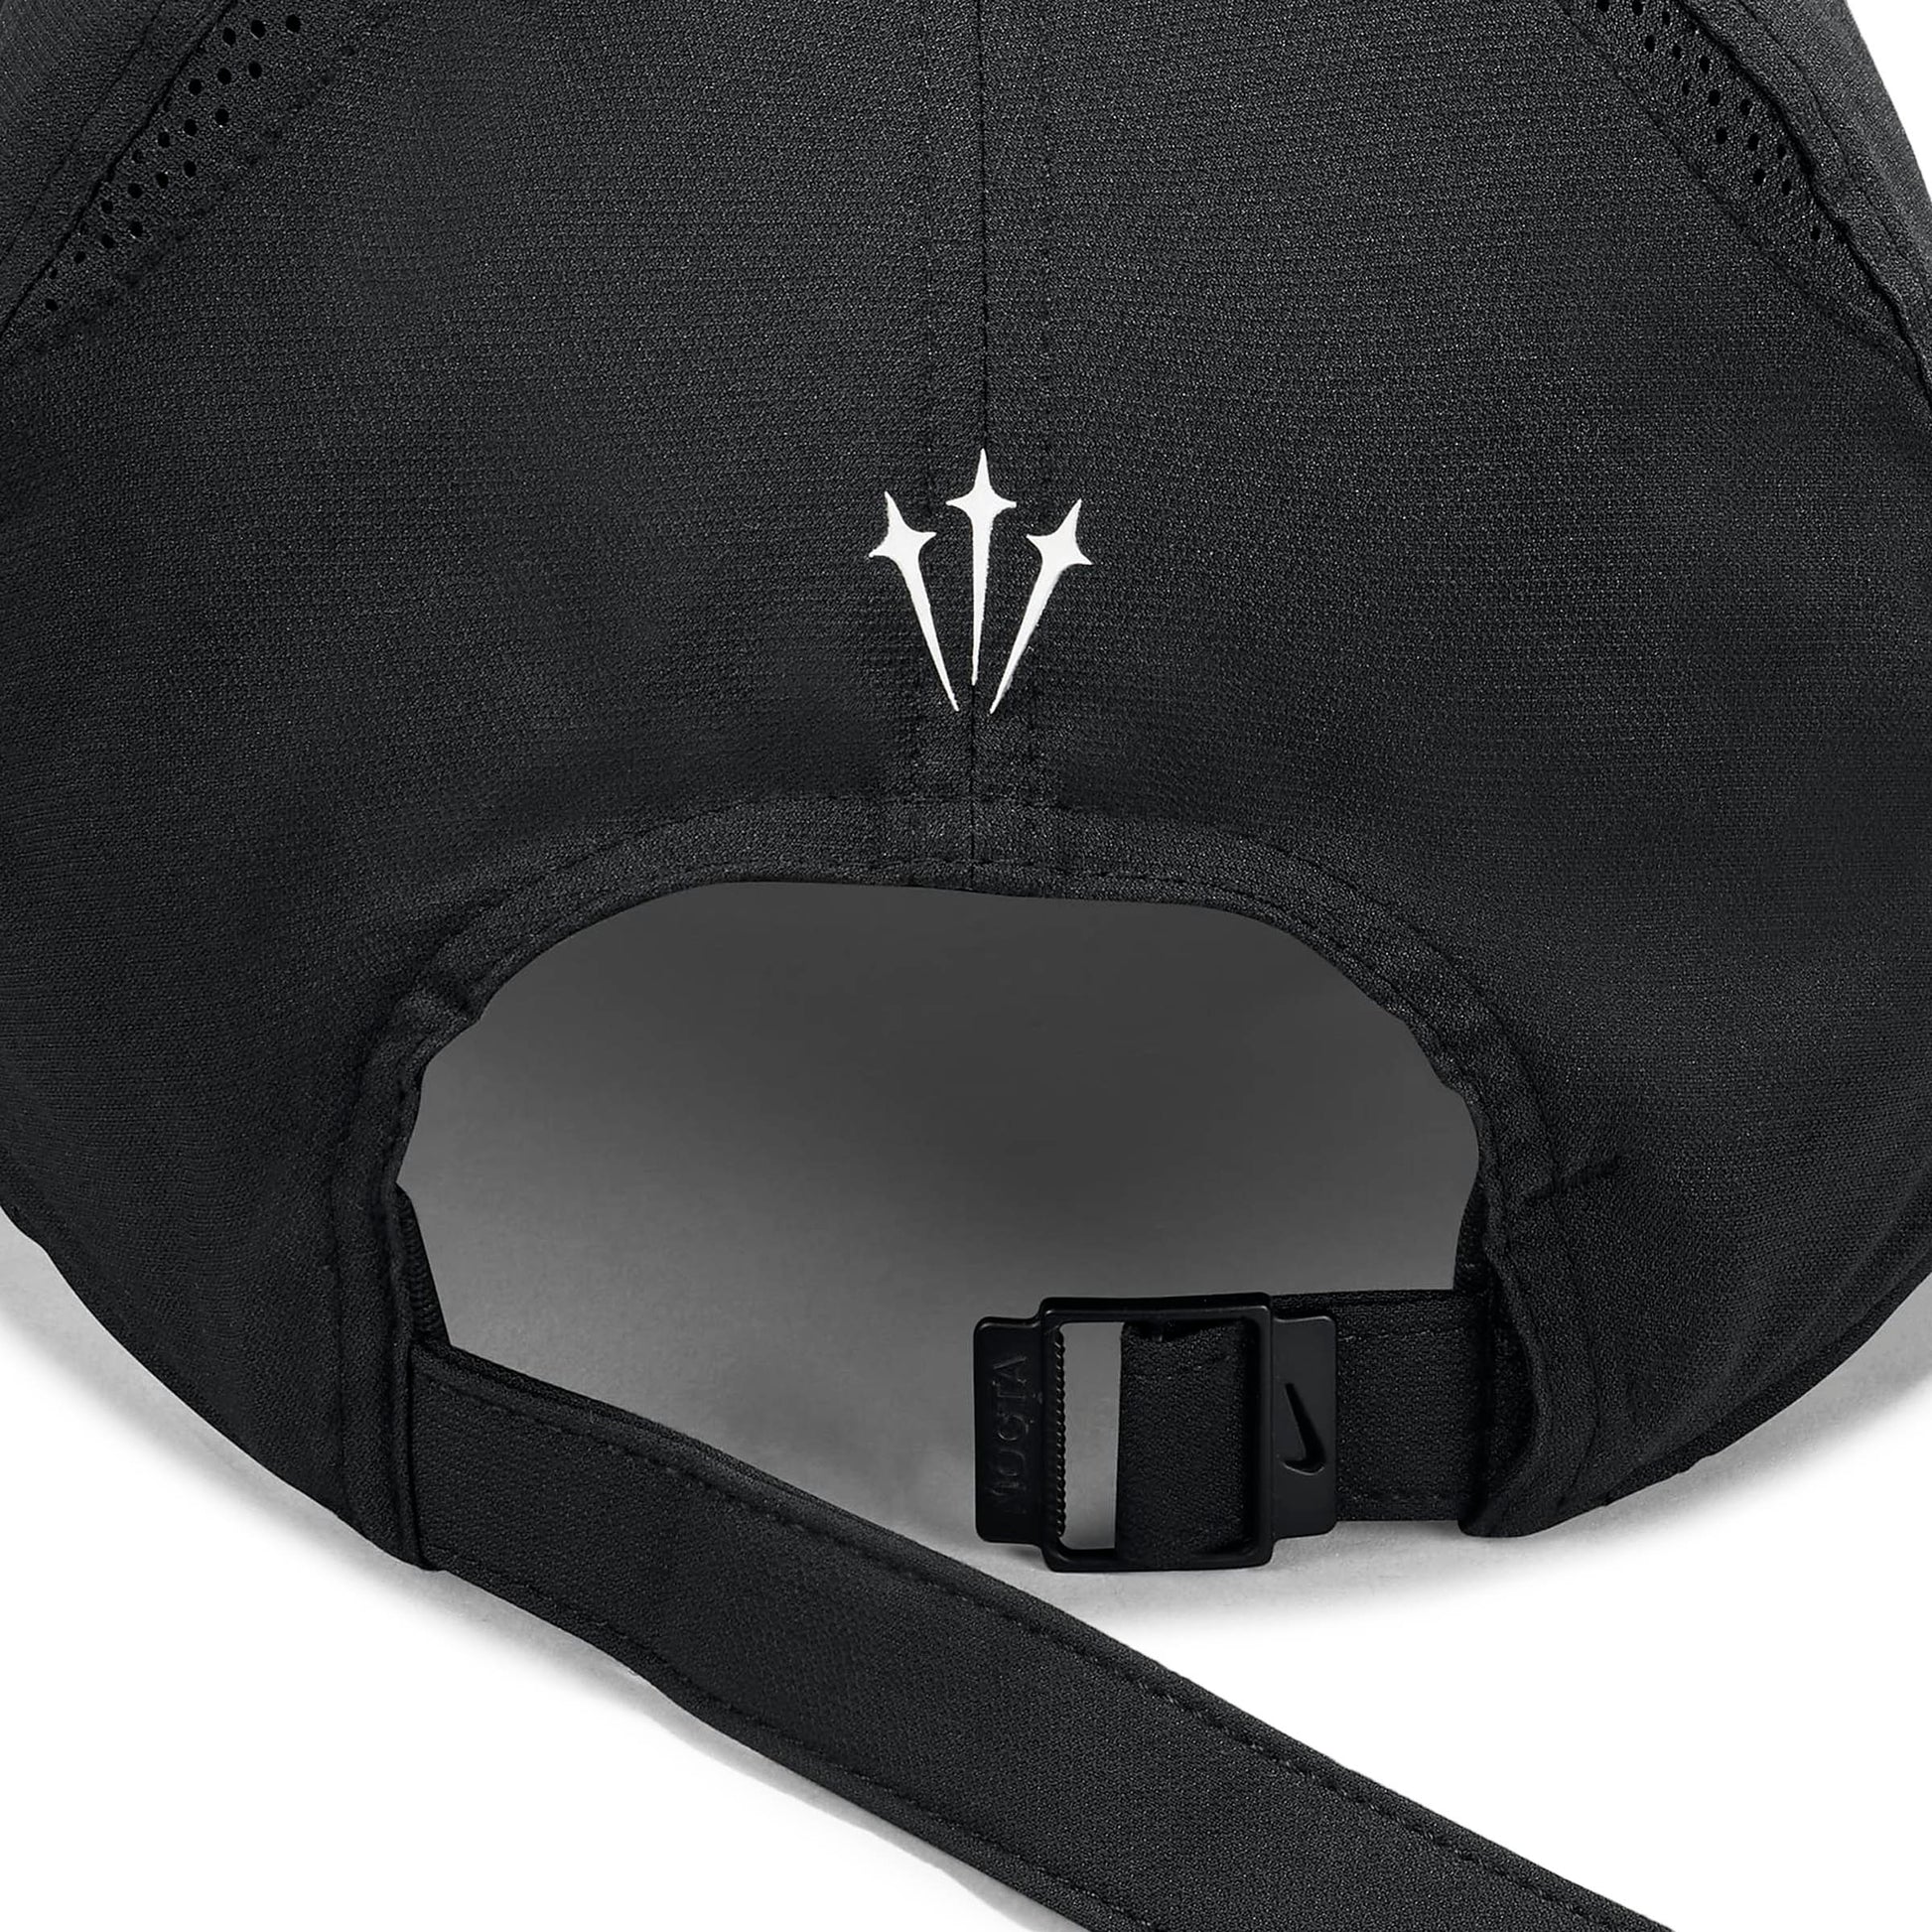 Nike Accessories - HATS - Misc Hat NOCTA CAP